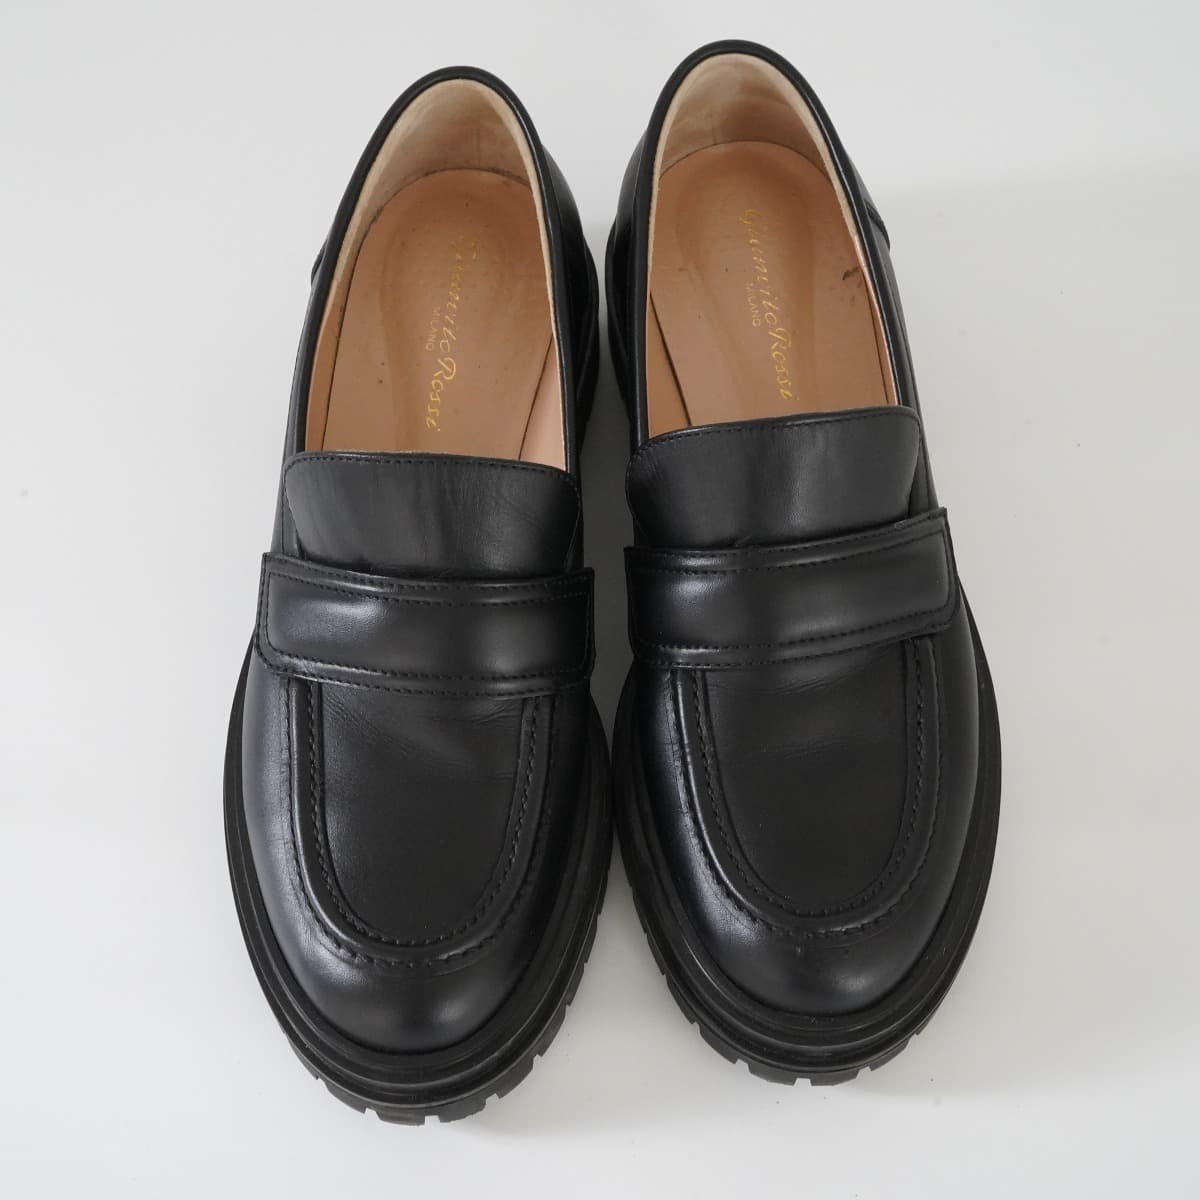  обычная цена 12 десять тысяч L\'Appartementa Pal tomonGIANVITO ROSSI Jean vi to Rossi ARGO Loafer кожа 38 24cm толщина низ обувь обувь 21S чёрный 